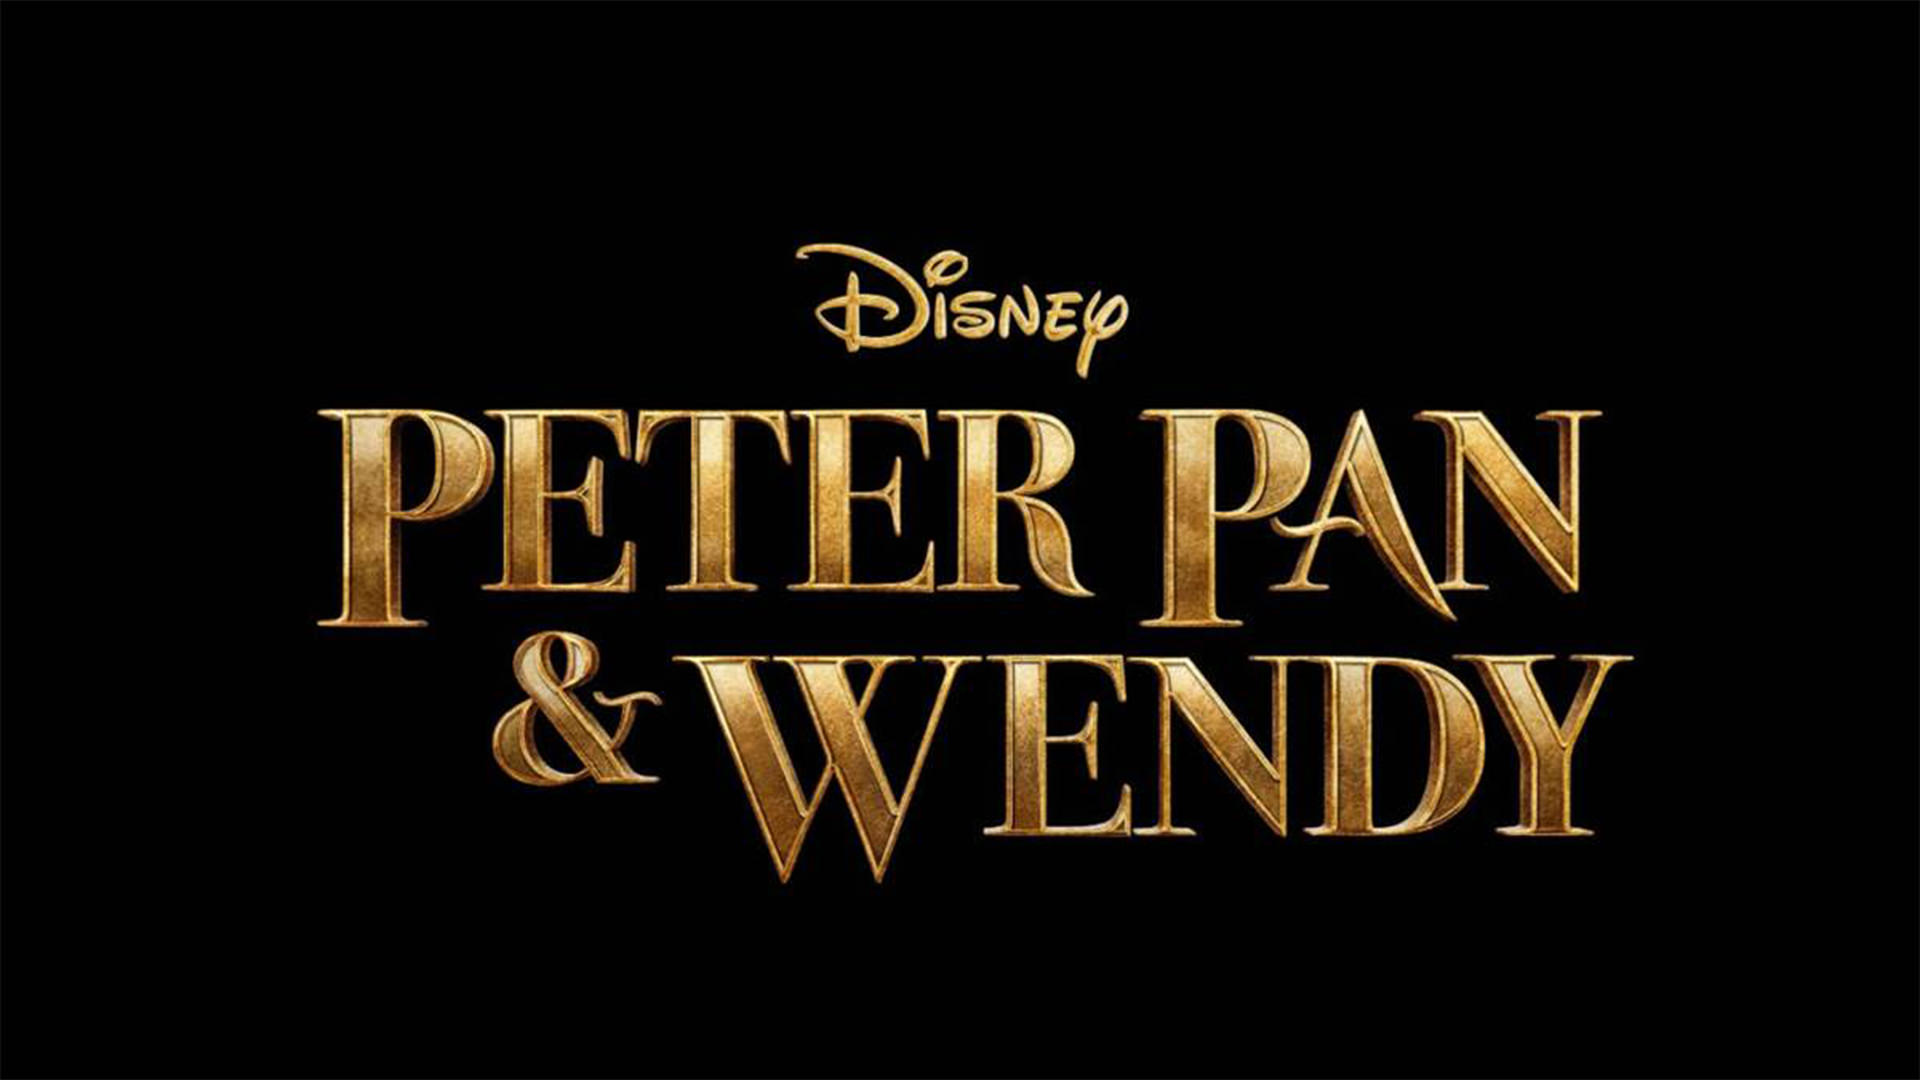 لوگو رسمی فیلم Peter Pan and Wendy / پیتر پن و وندی